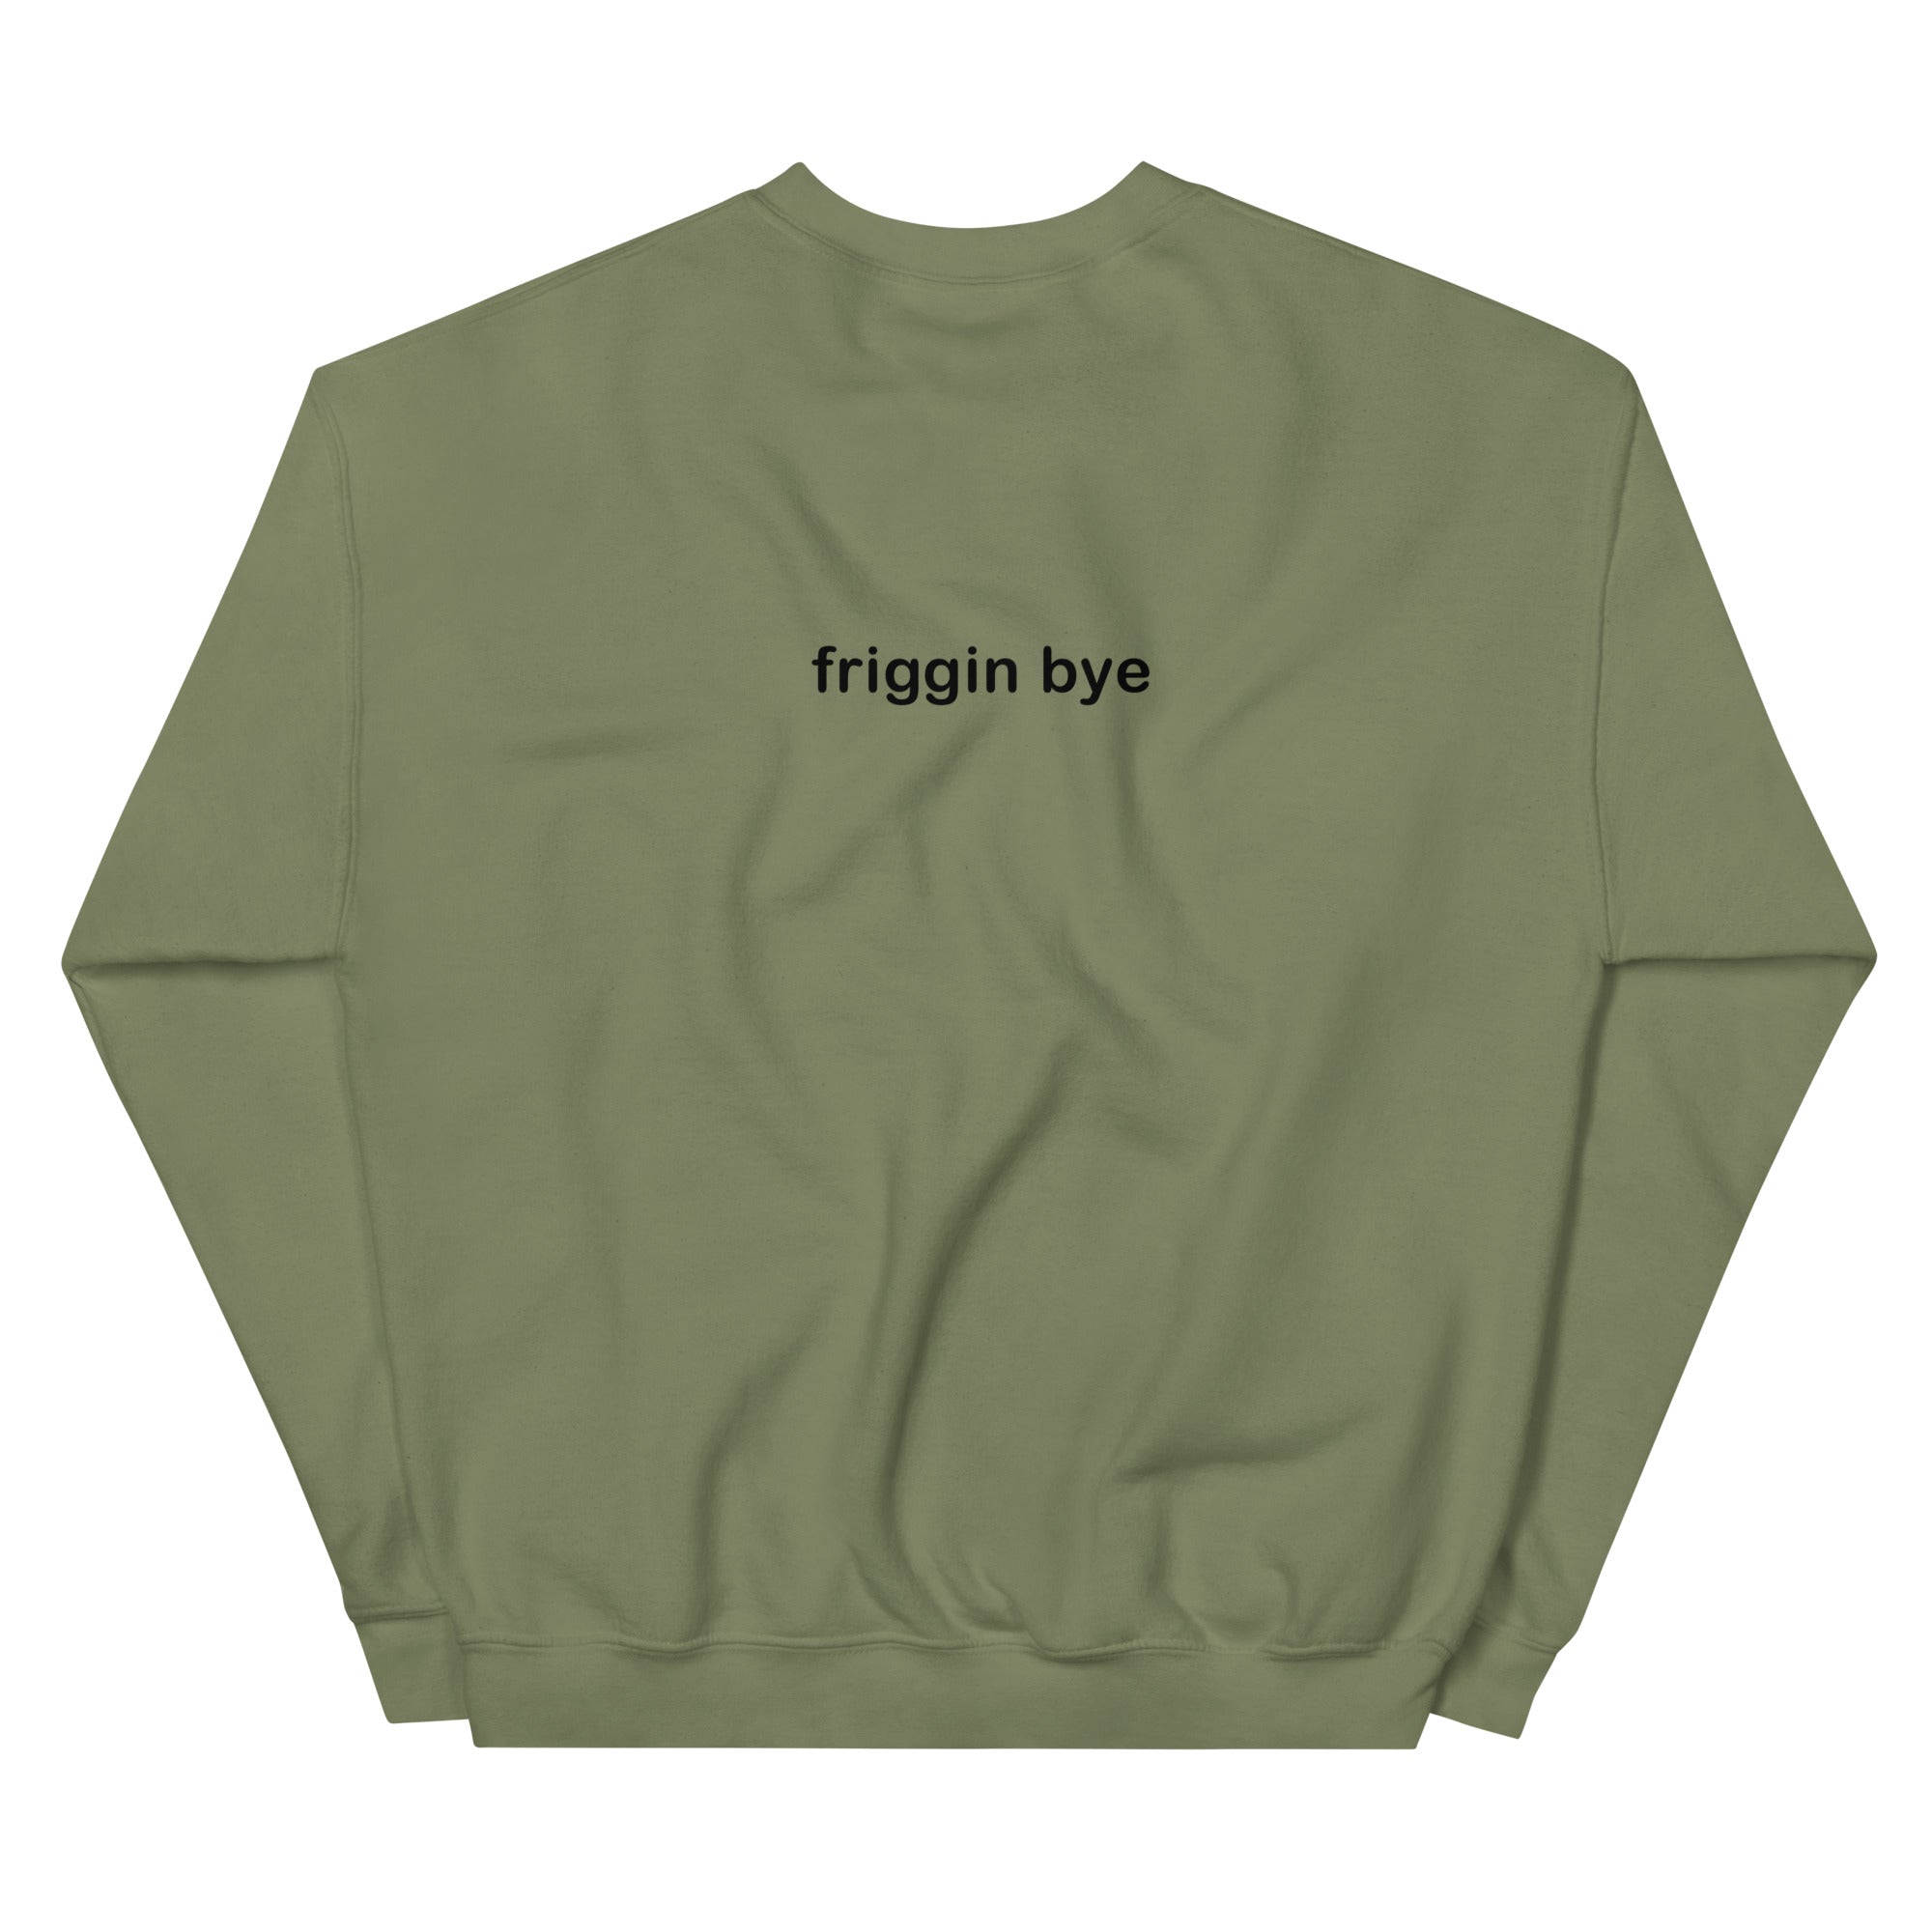 "Friggin Hi, Friggin Bye" Black Text Adult Unisex Sweatshirt